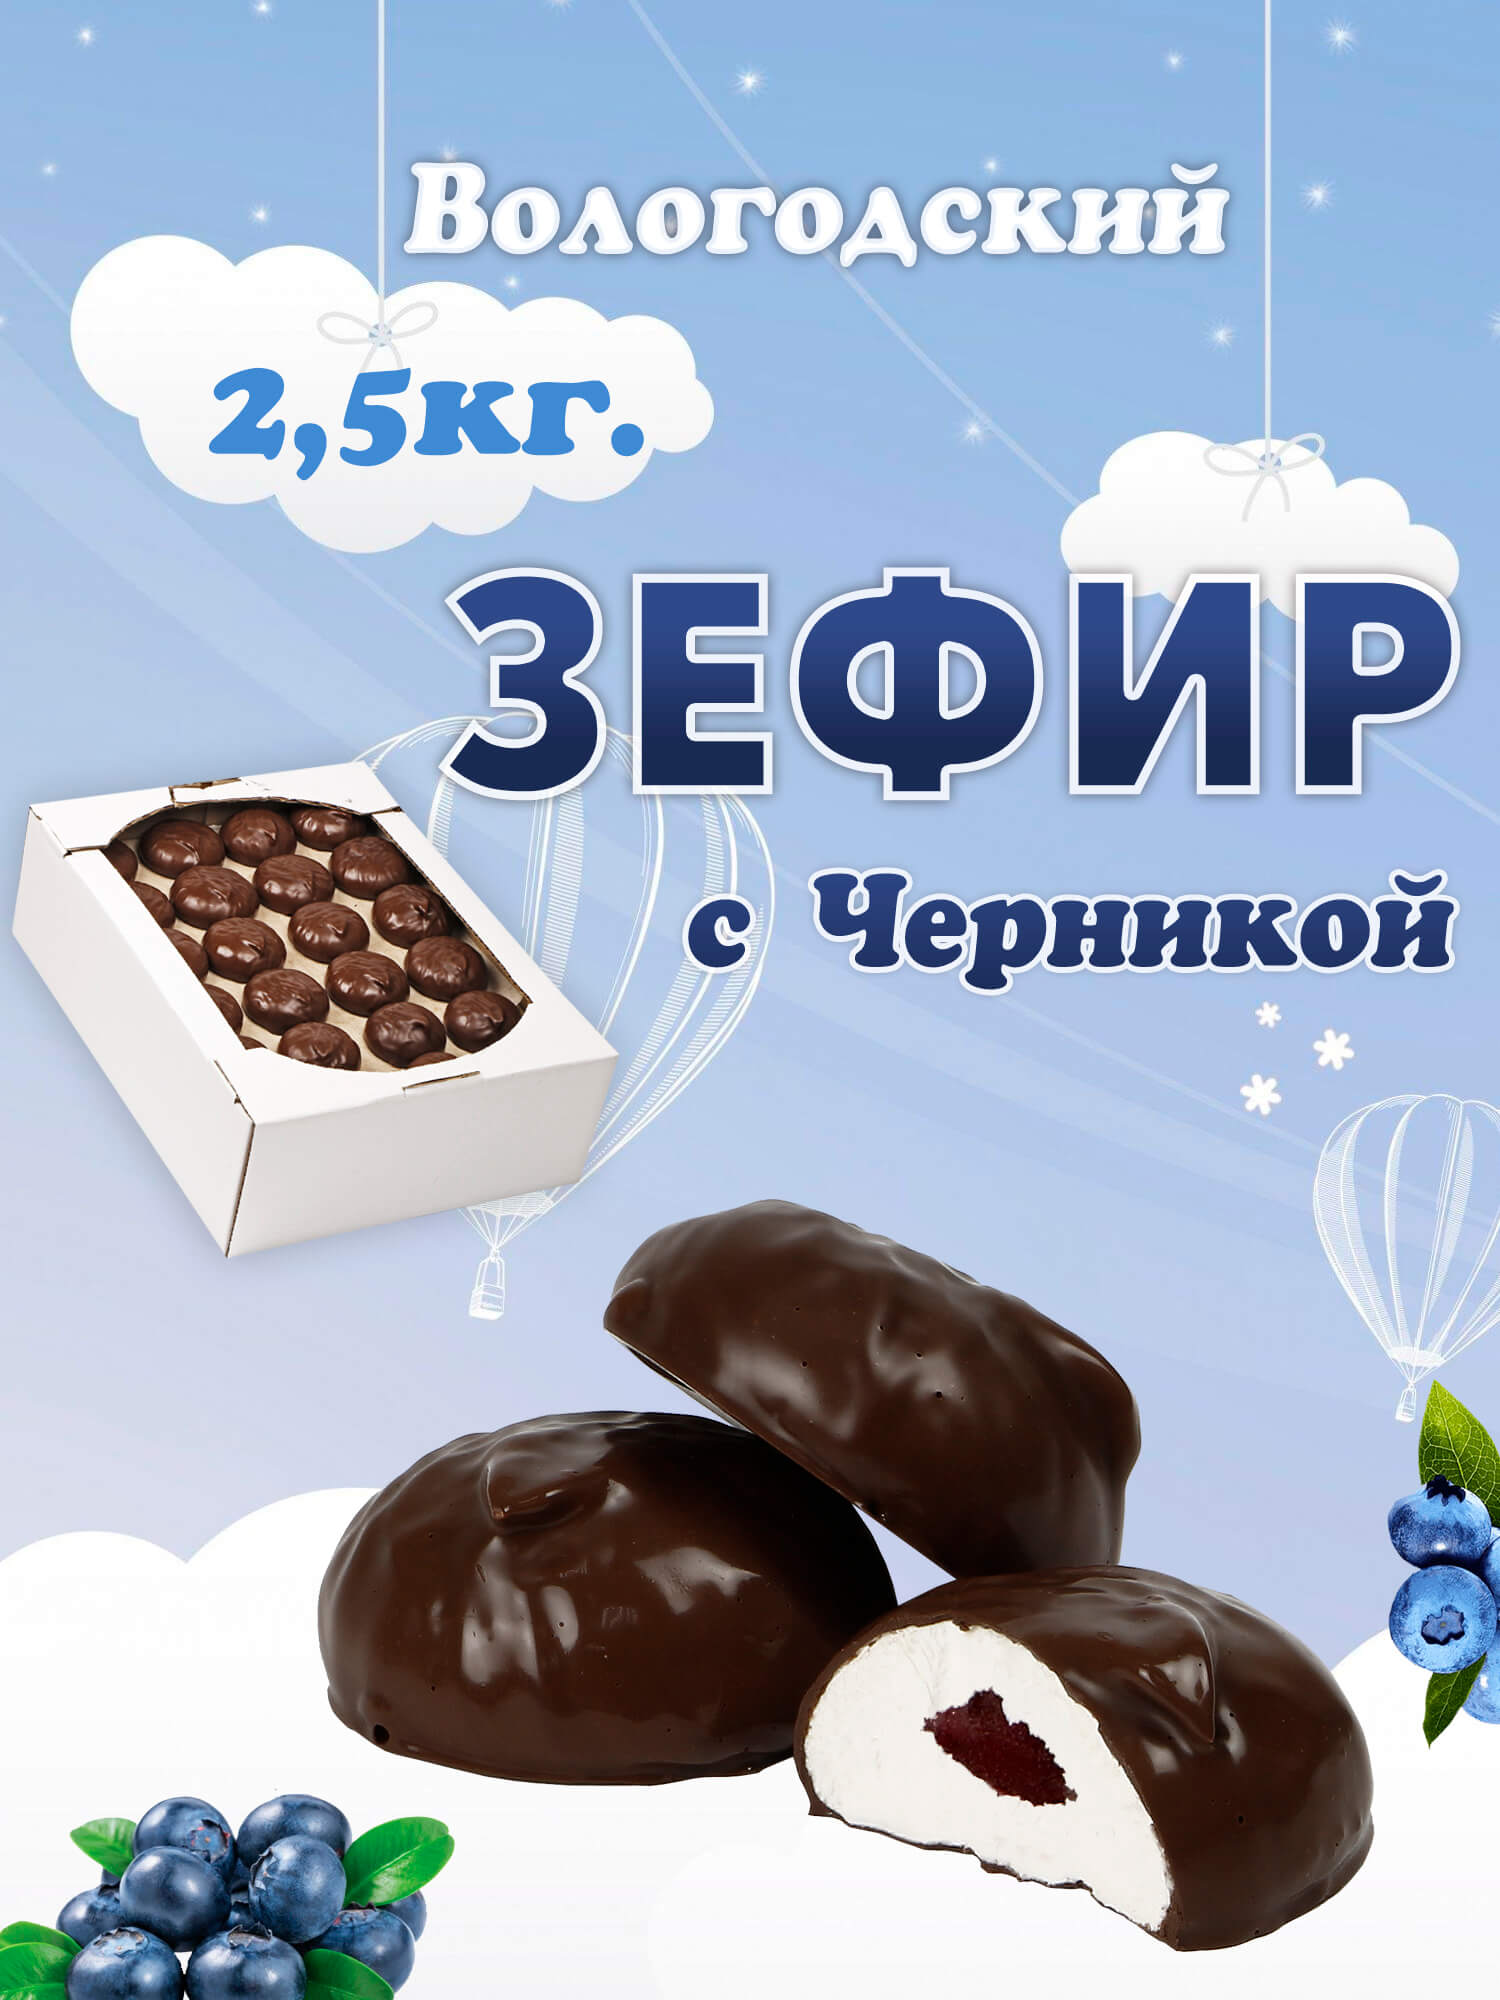 Зефир Вологодский в шоколаде с Черникой  2,5кг.  .jpg